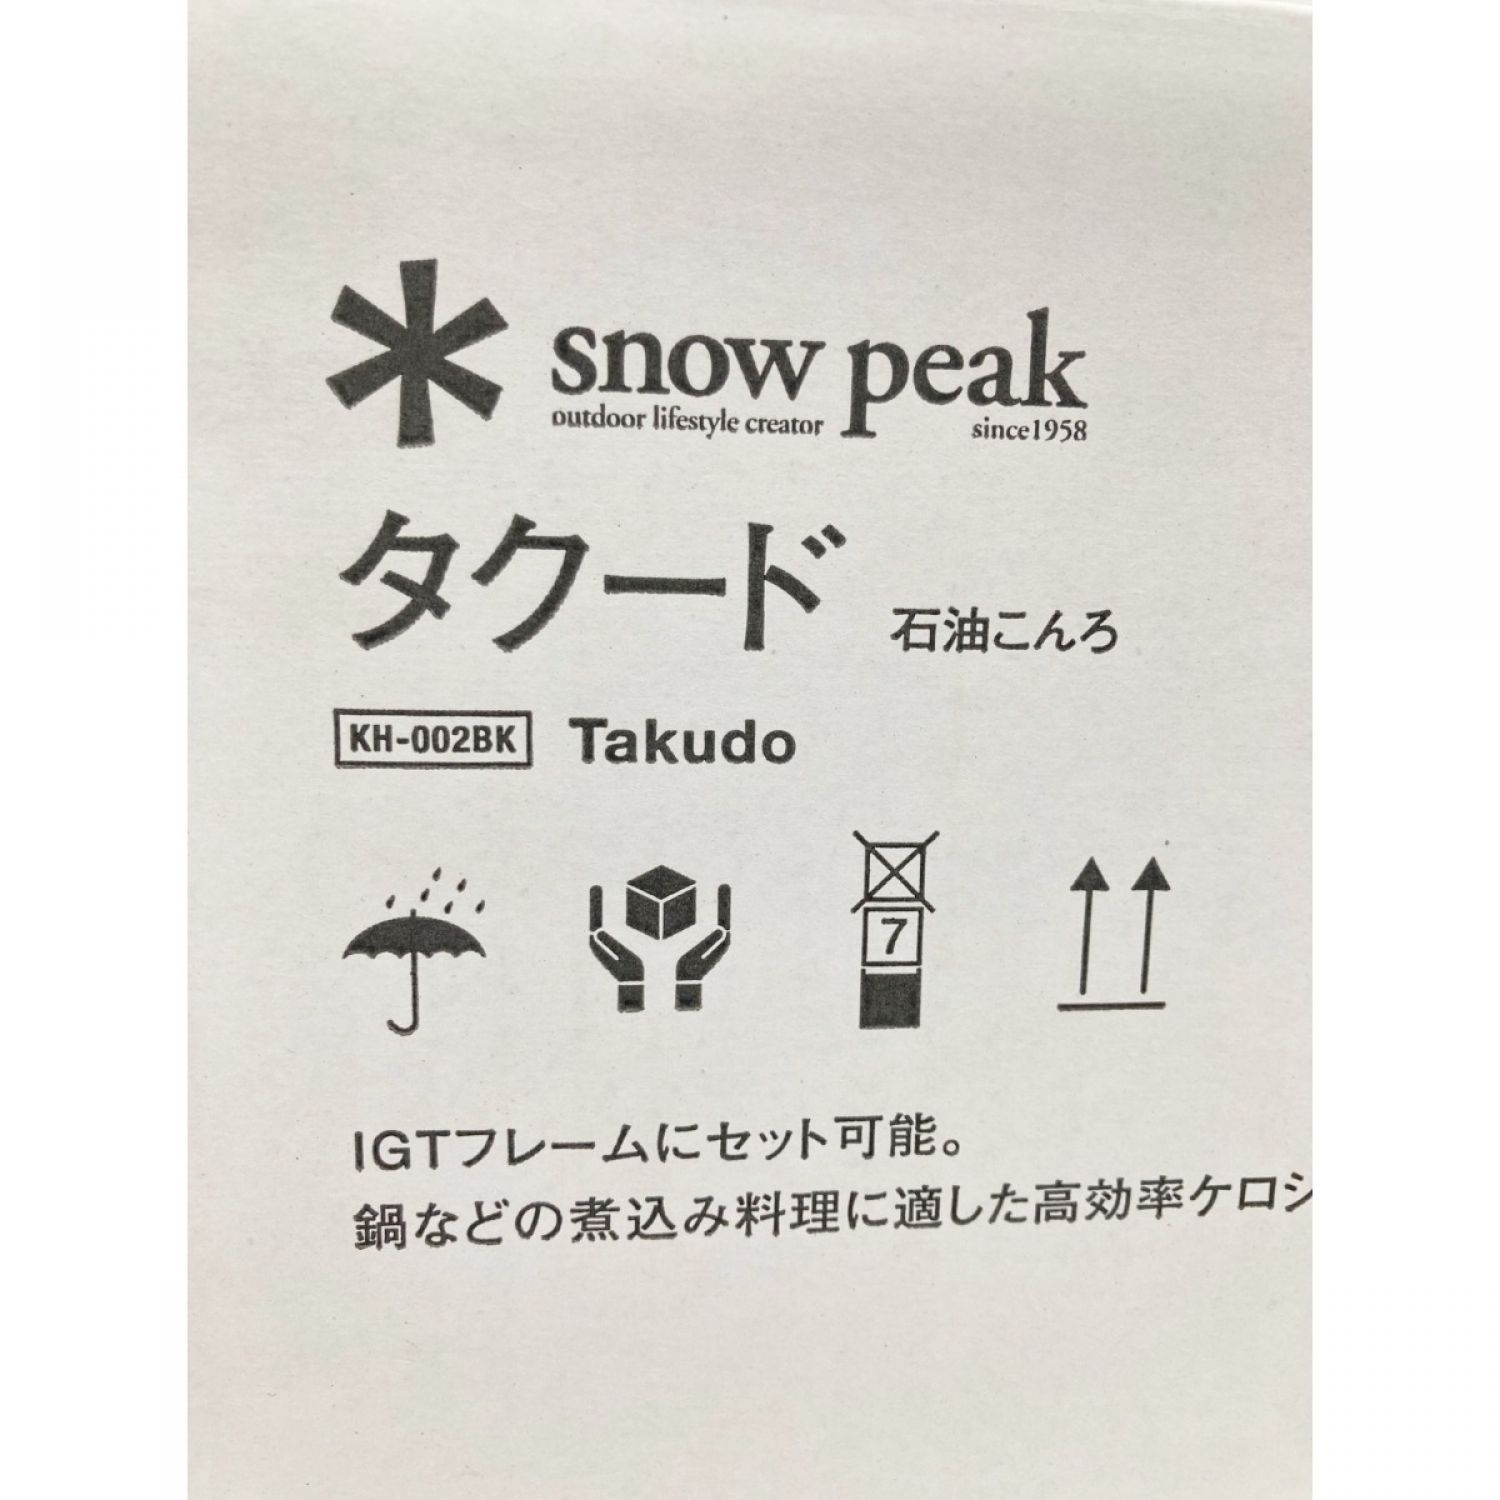 スノーピーク タクード Takudo 新品 未開封 - ストーブ/コンロ